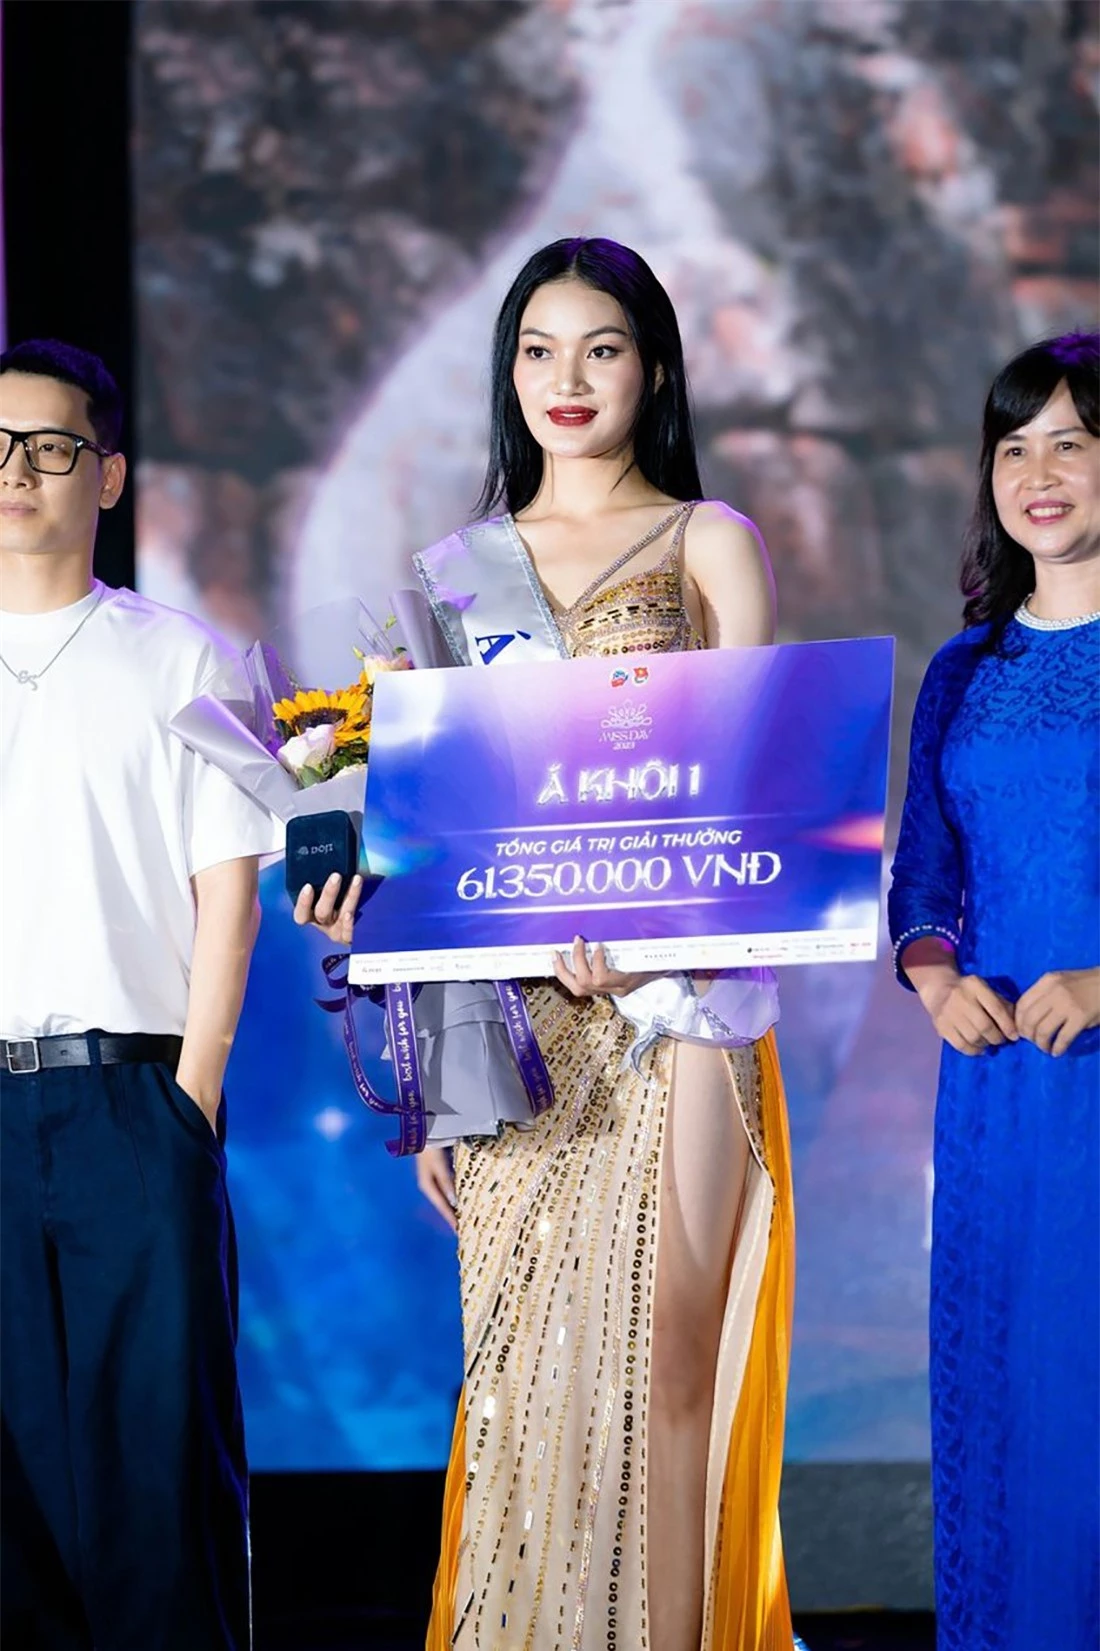 Nhan sắc cô gái cao 1,77 m là Á hậu 1 tại Hoa hậu Trái Đất Việt Nam ảnh 4